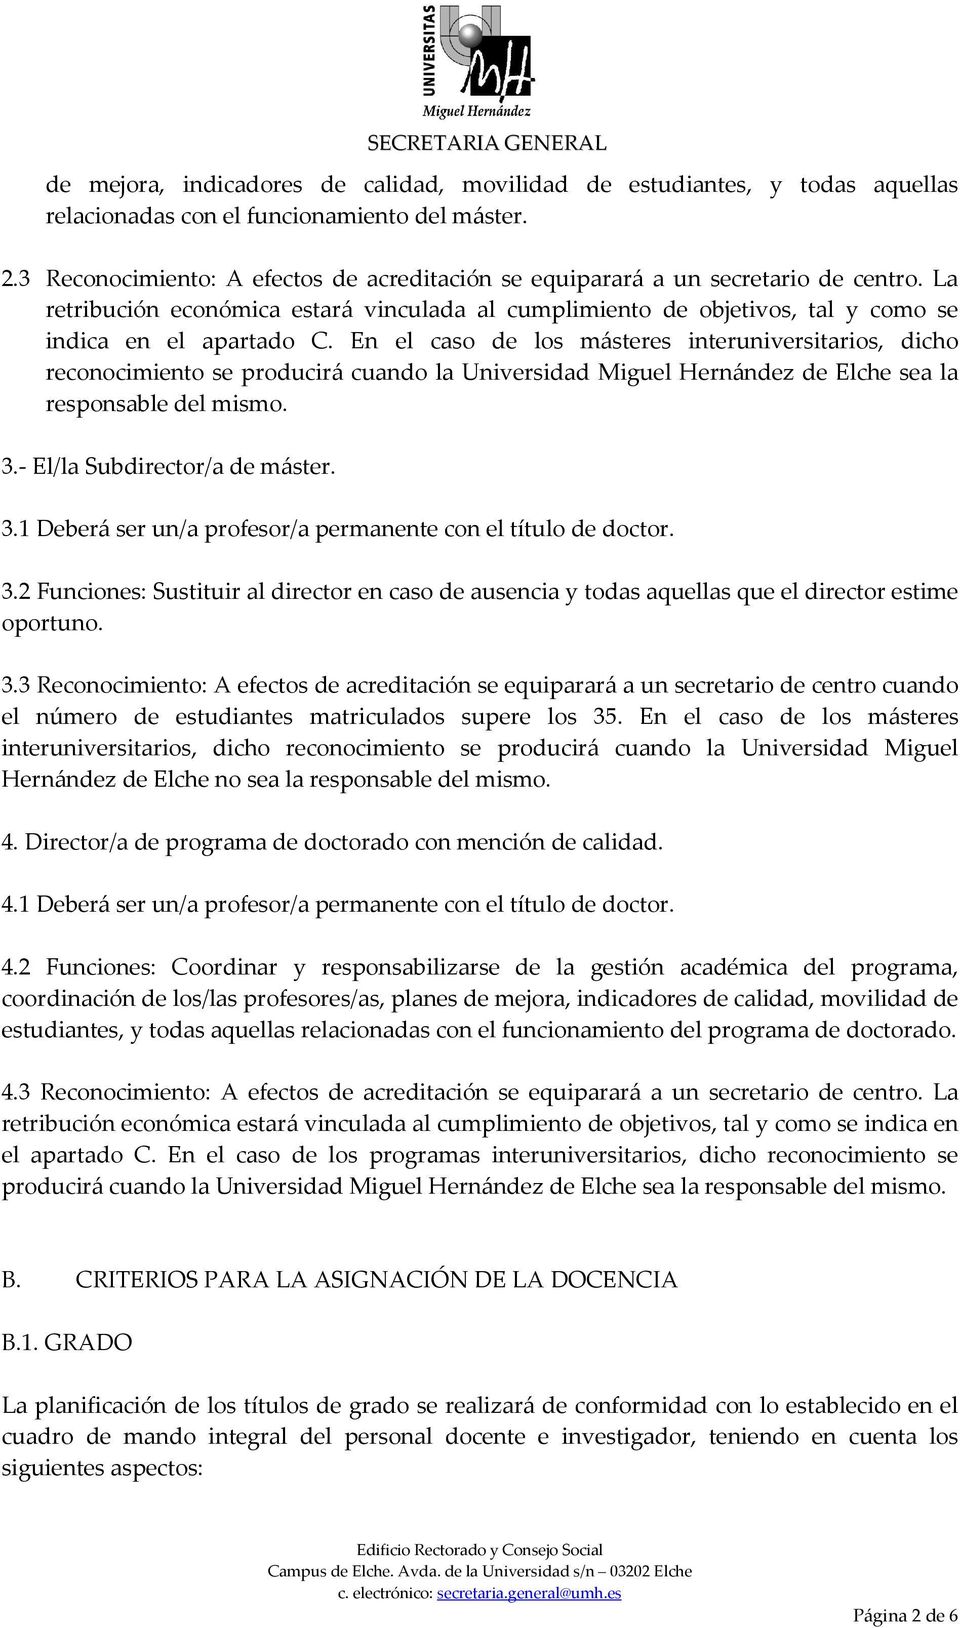 En el caso de los másteres interuniversitarios, dicho reconocimiento se producirá cuando la Universidad Miguel Hernández de Elche sea la responsable del mismo. 3.